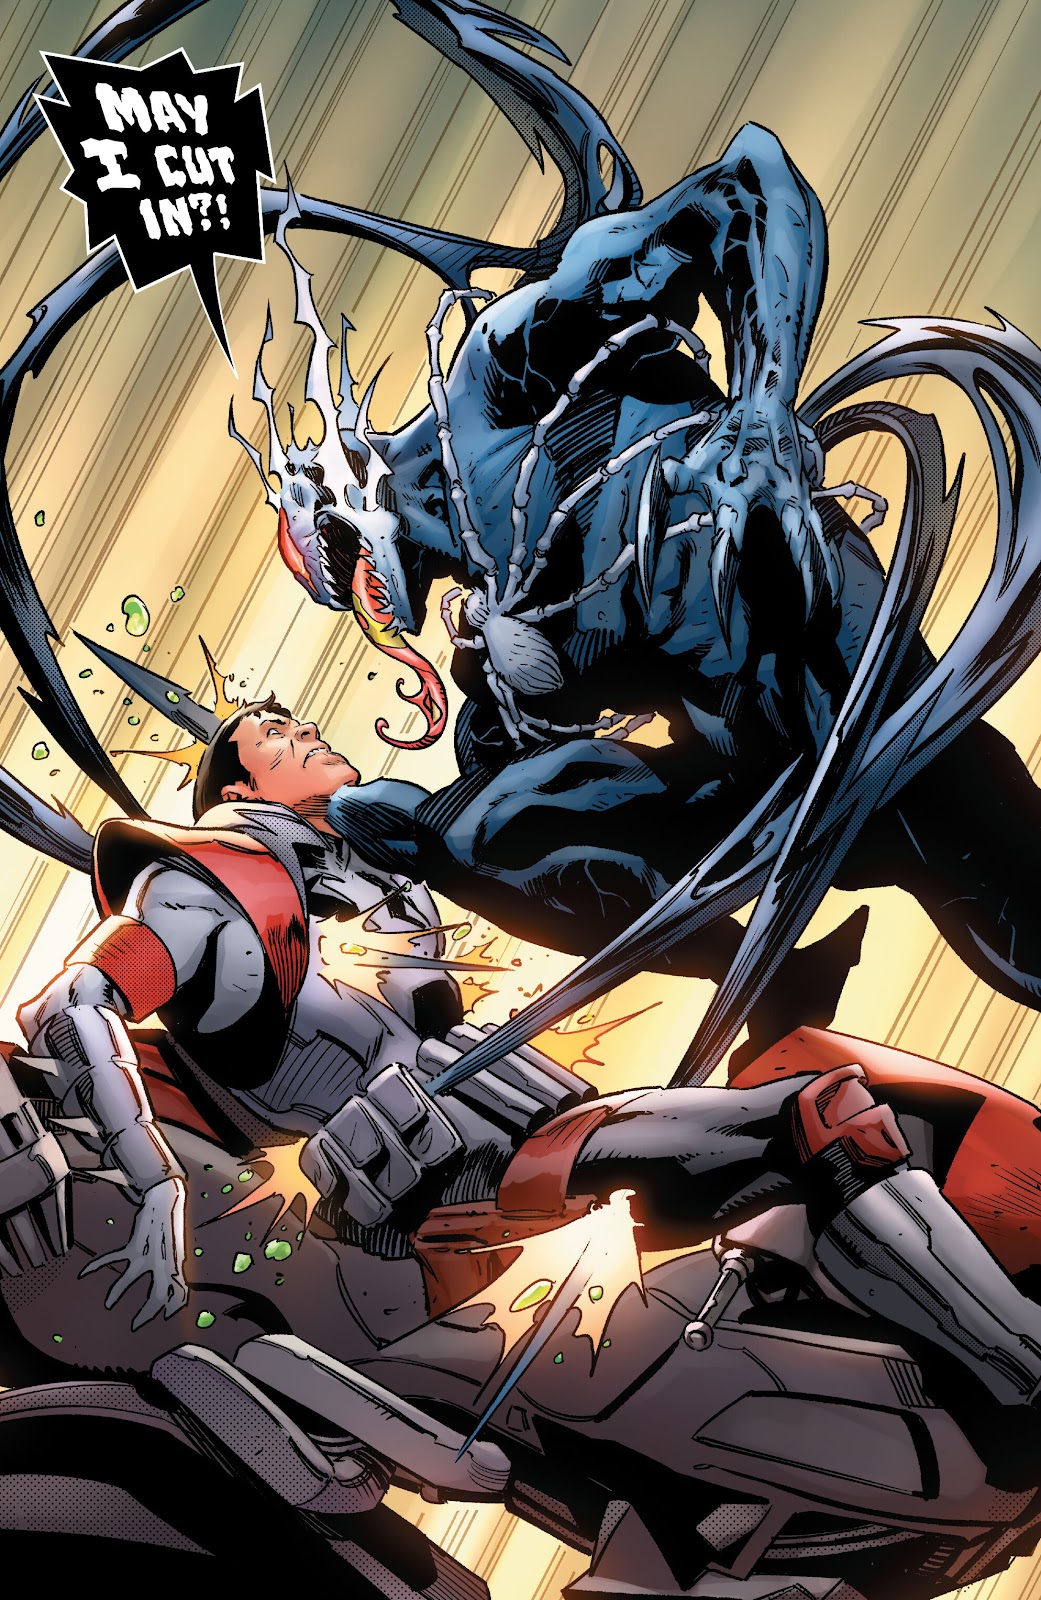 Symbiote Spider-Man 2099 issue 1 - Page 30